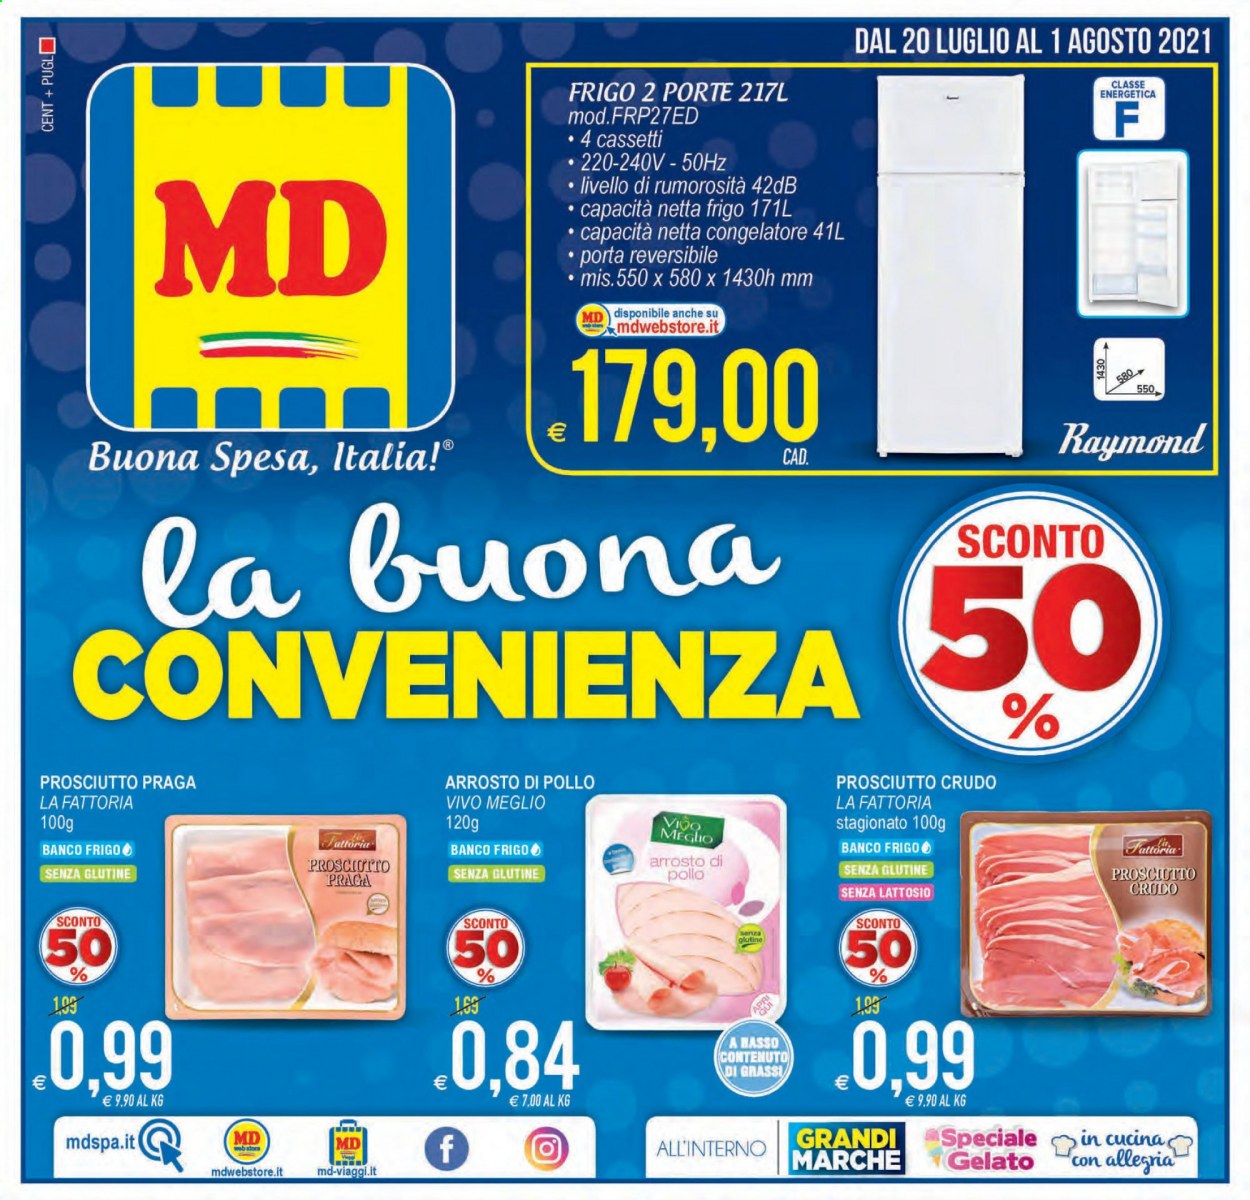 thumbnail - Volantino MD Discount - 20/7/2021 - 1/8/2021 - Prodotti in offerta - arrosto di pollo, prosciutto, La Fattoria, prosciutto crudo, gelato, congelatore. Pagina 1.